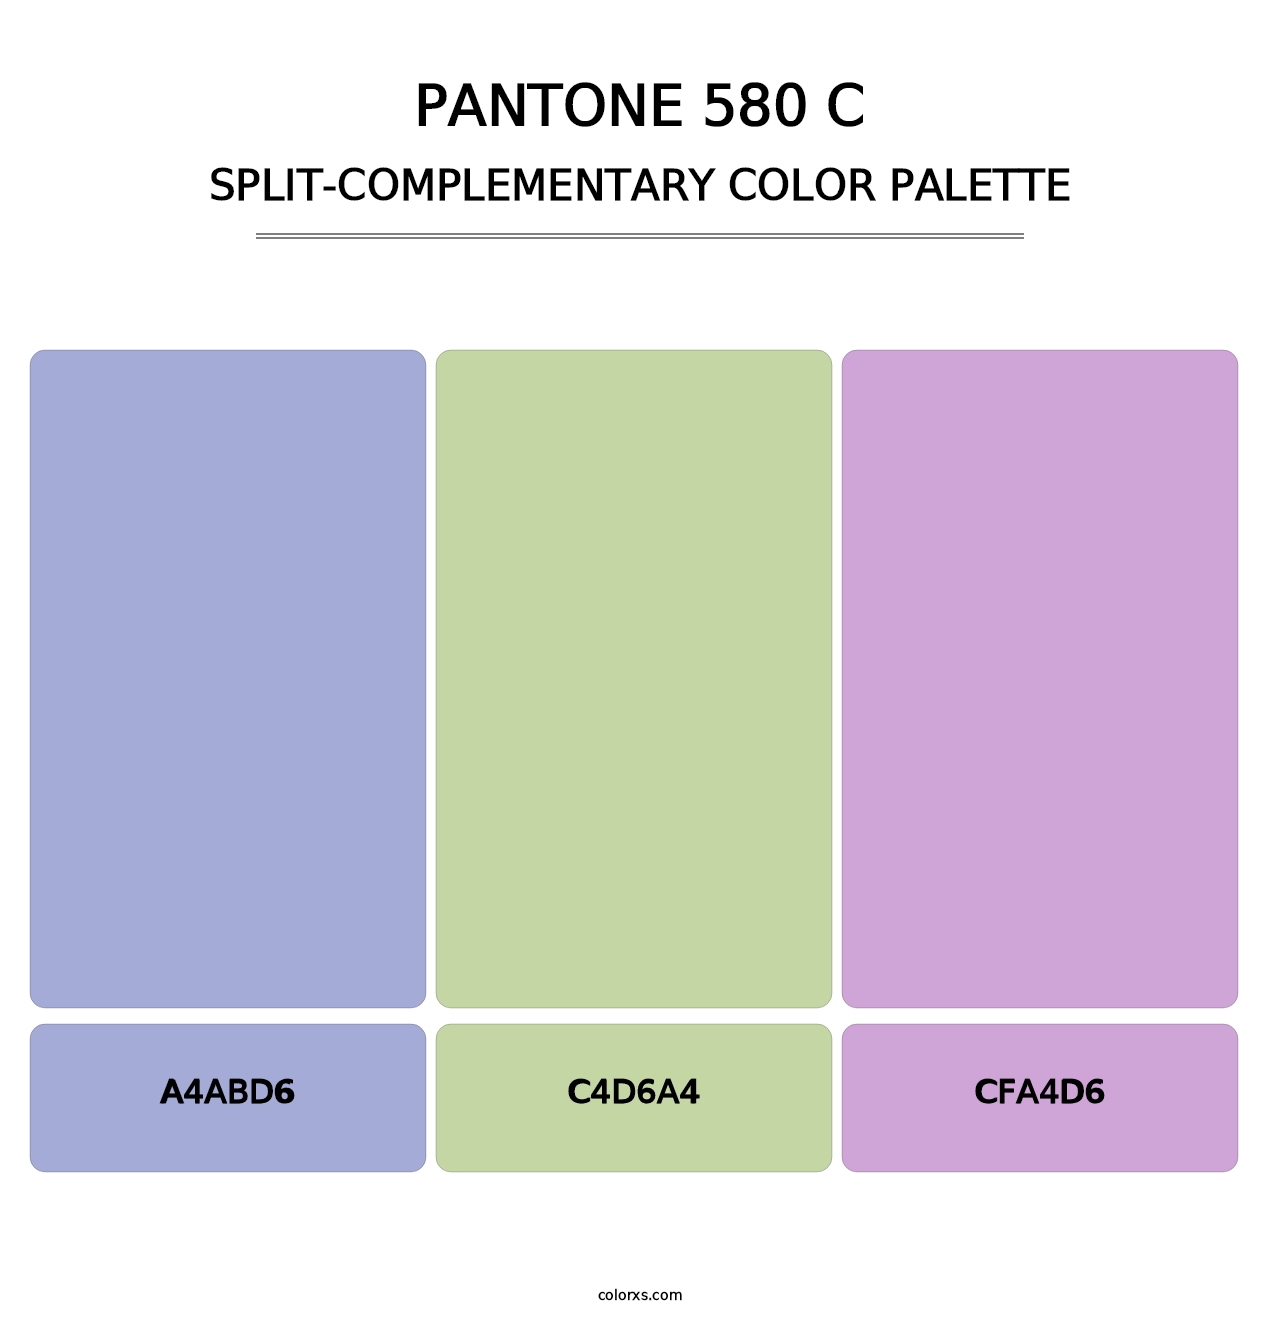 PANTONE 580 C - Split-Complementary Color Palette